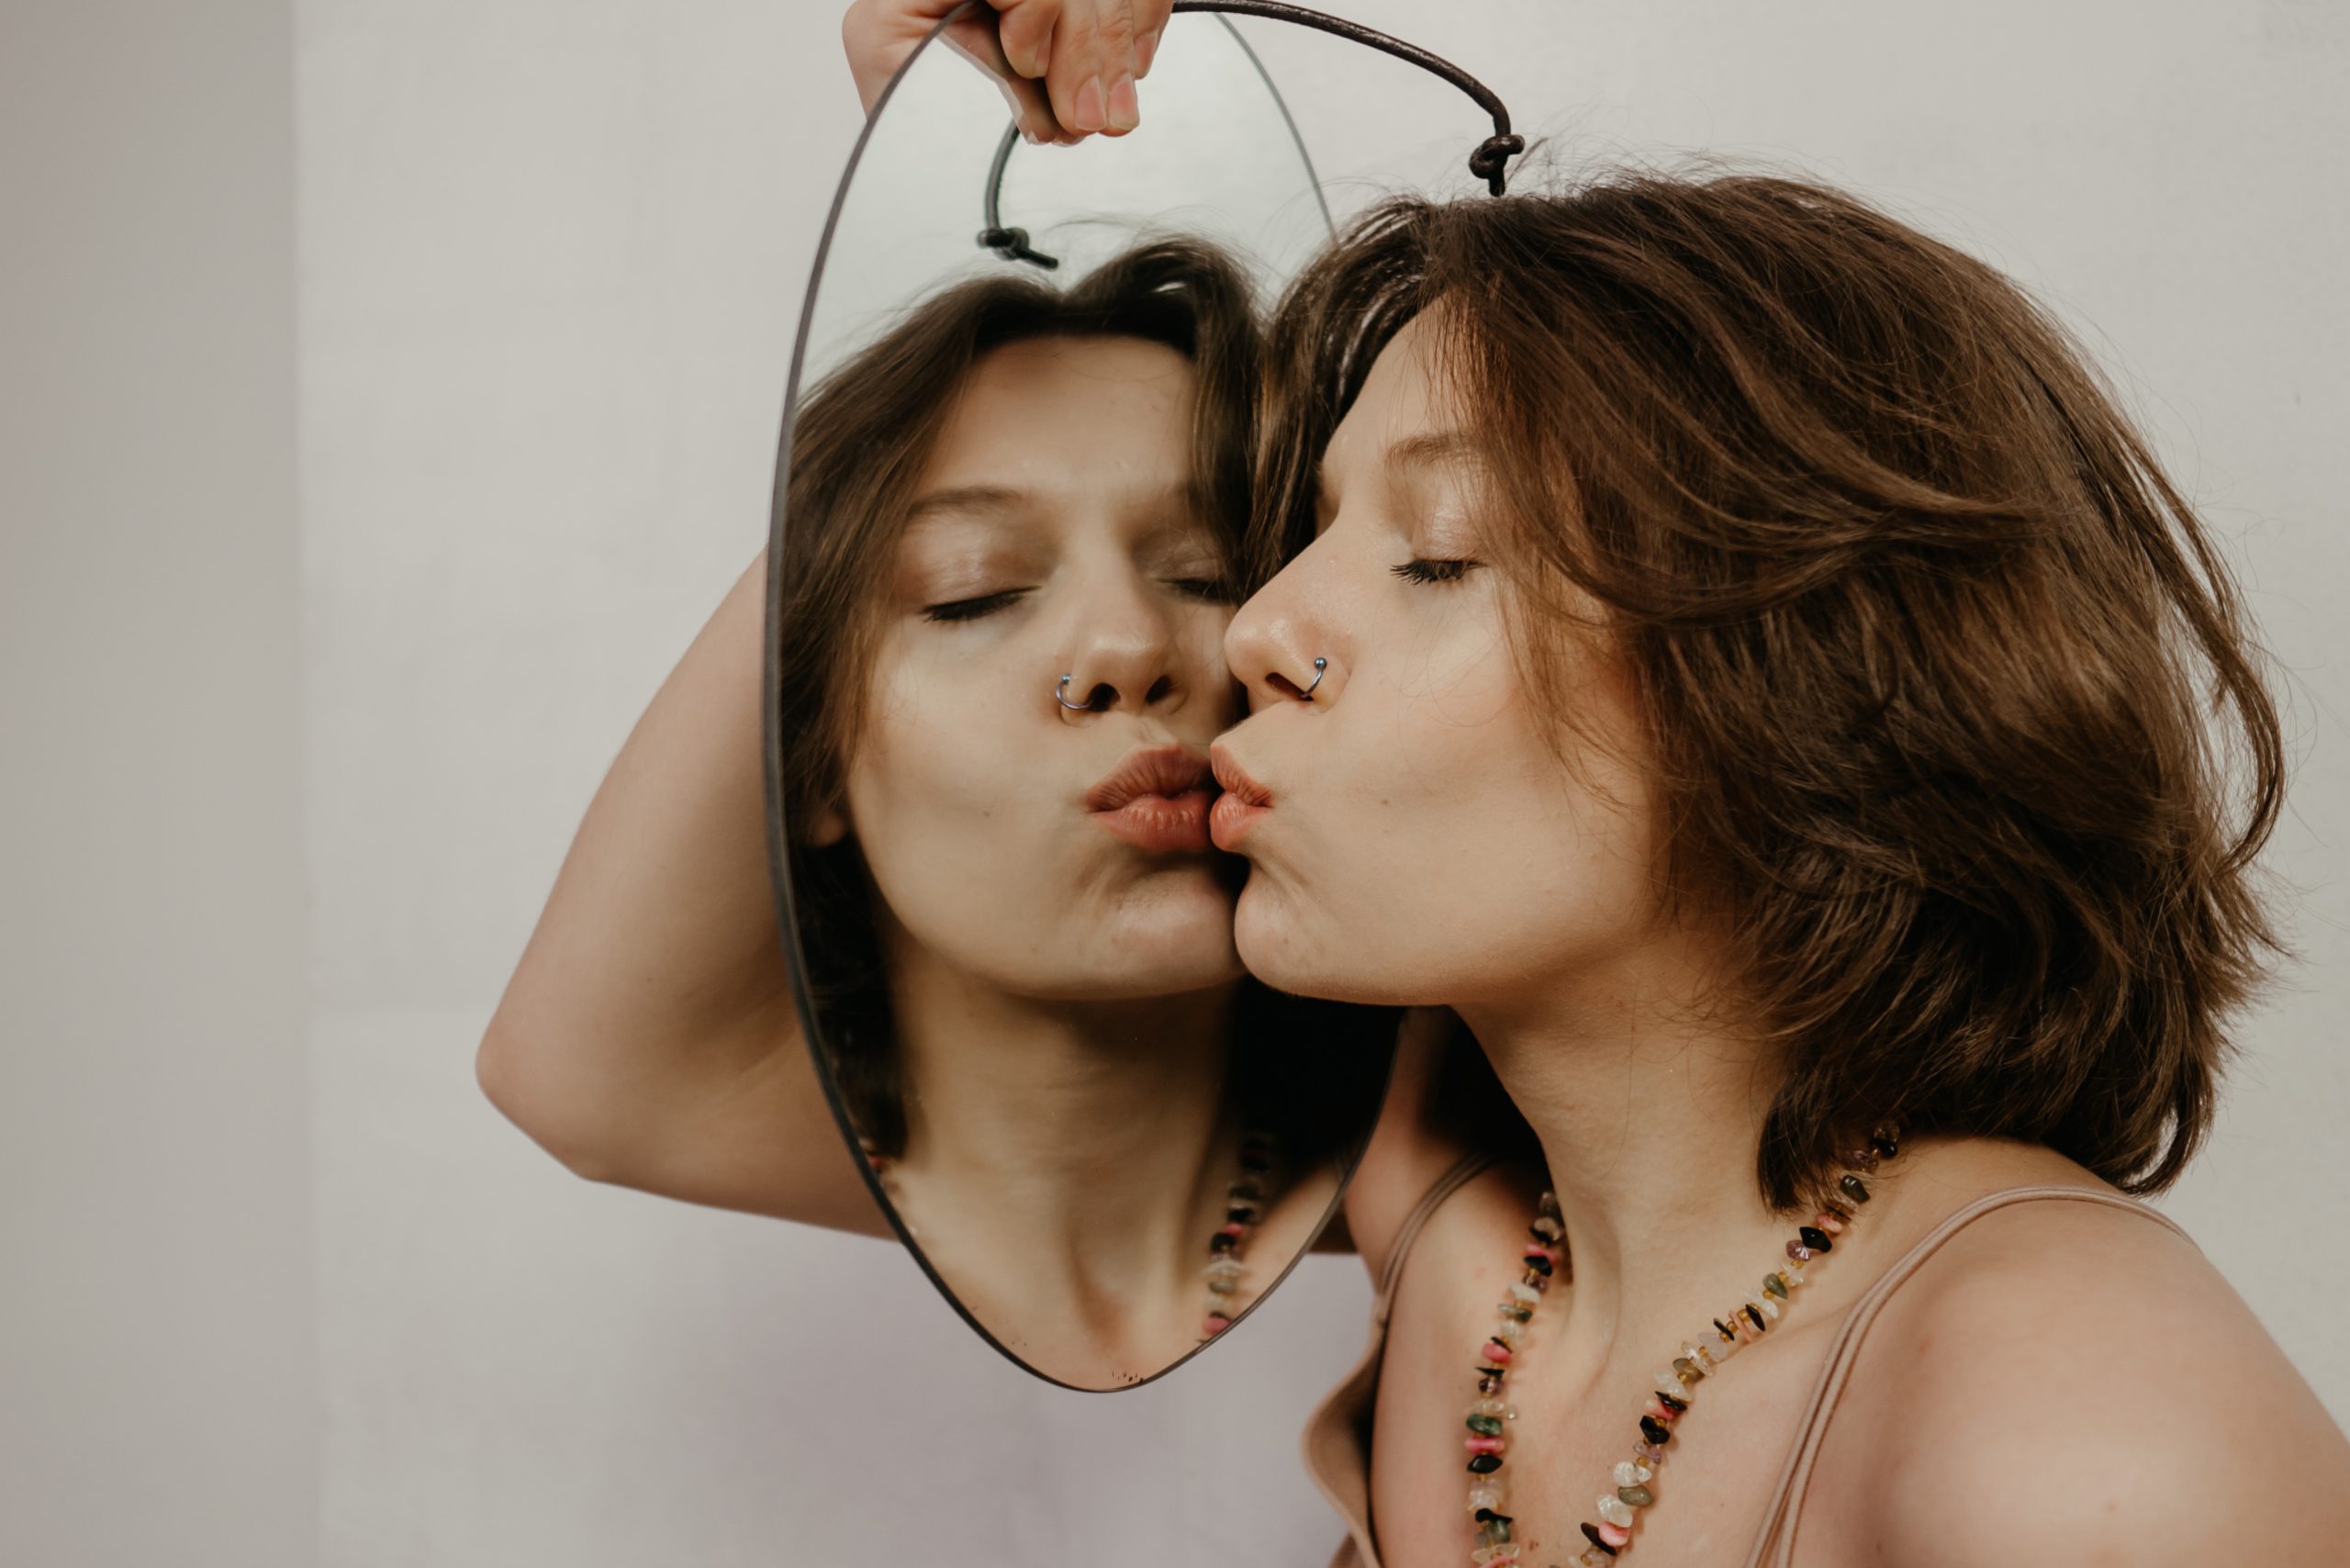 Una mujer se mira en el espejo y se da un beso, transmitiendo amor propio y confianza en sí misma. Una imagen que representa la importancia de la autoestima y el autodescubrimiento